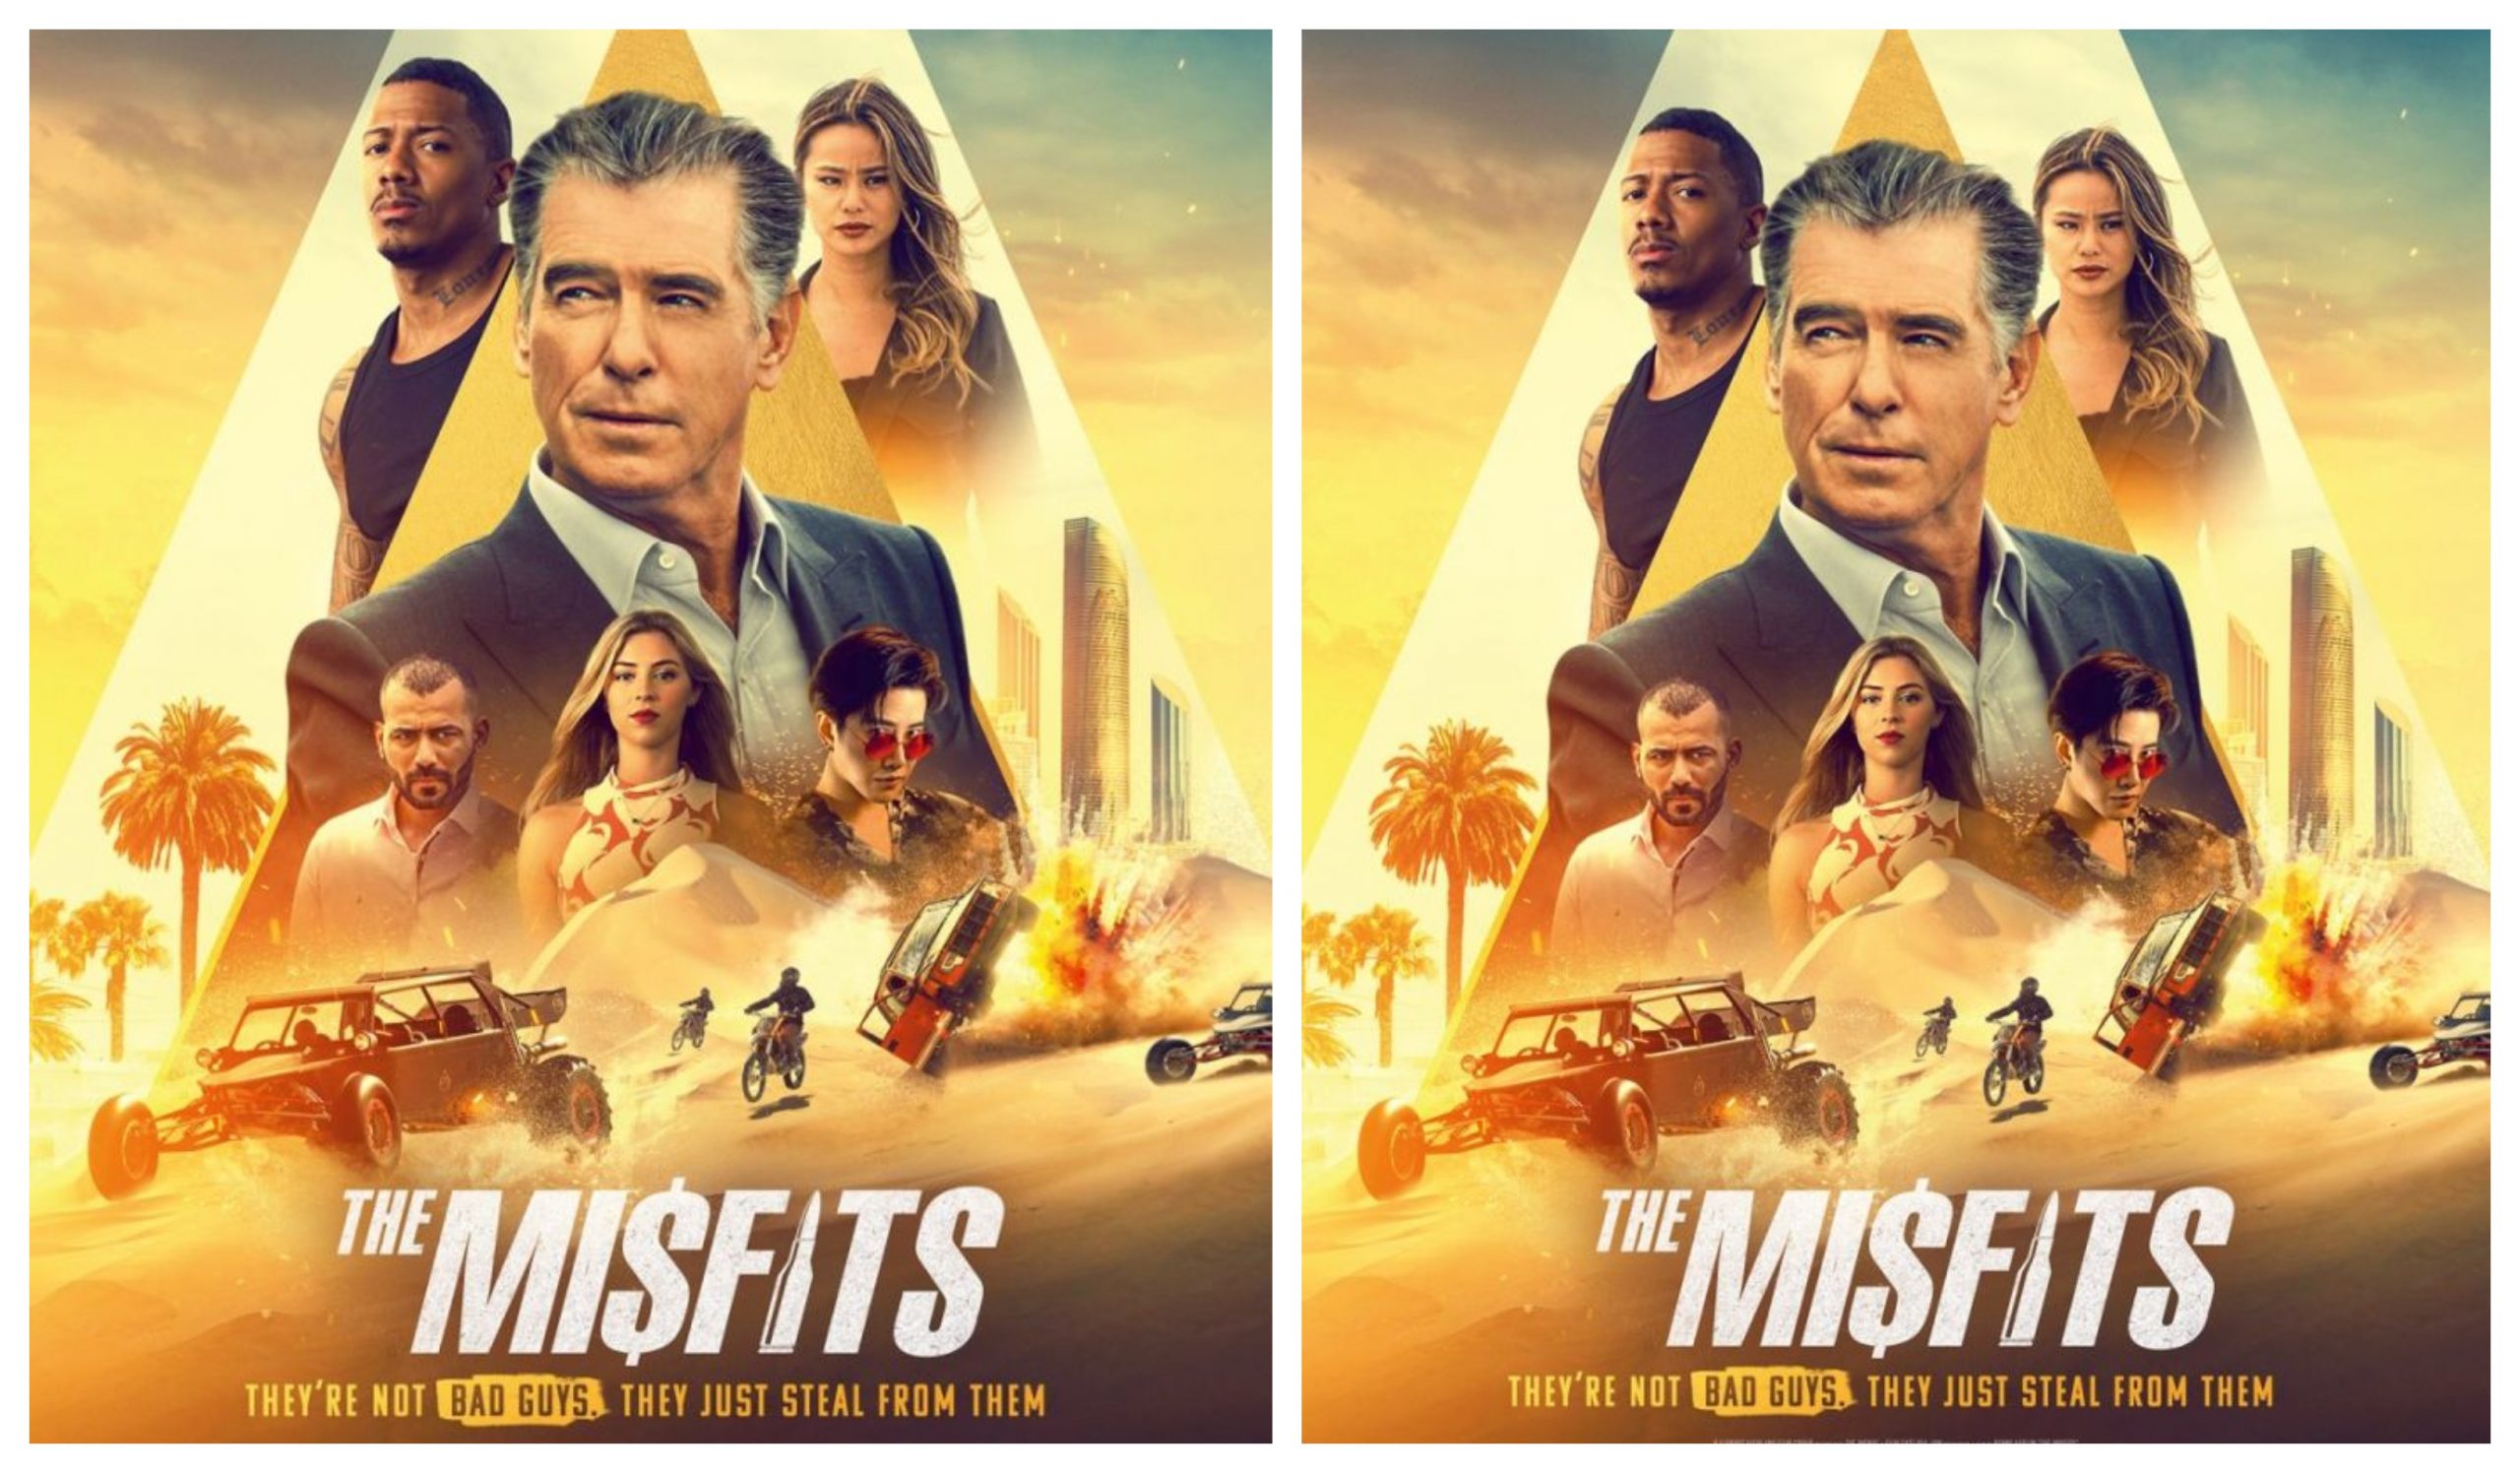 The misfits movie